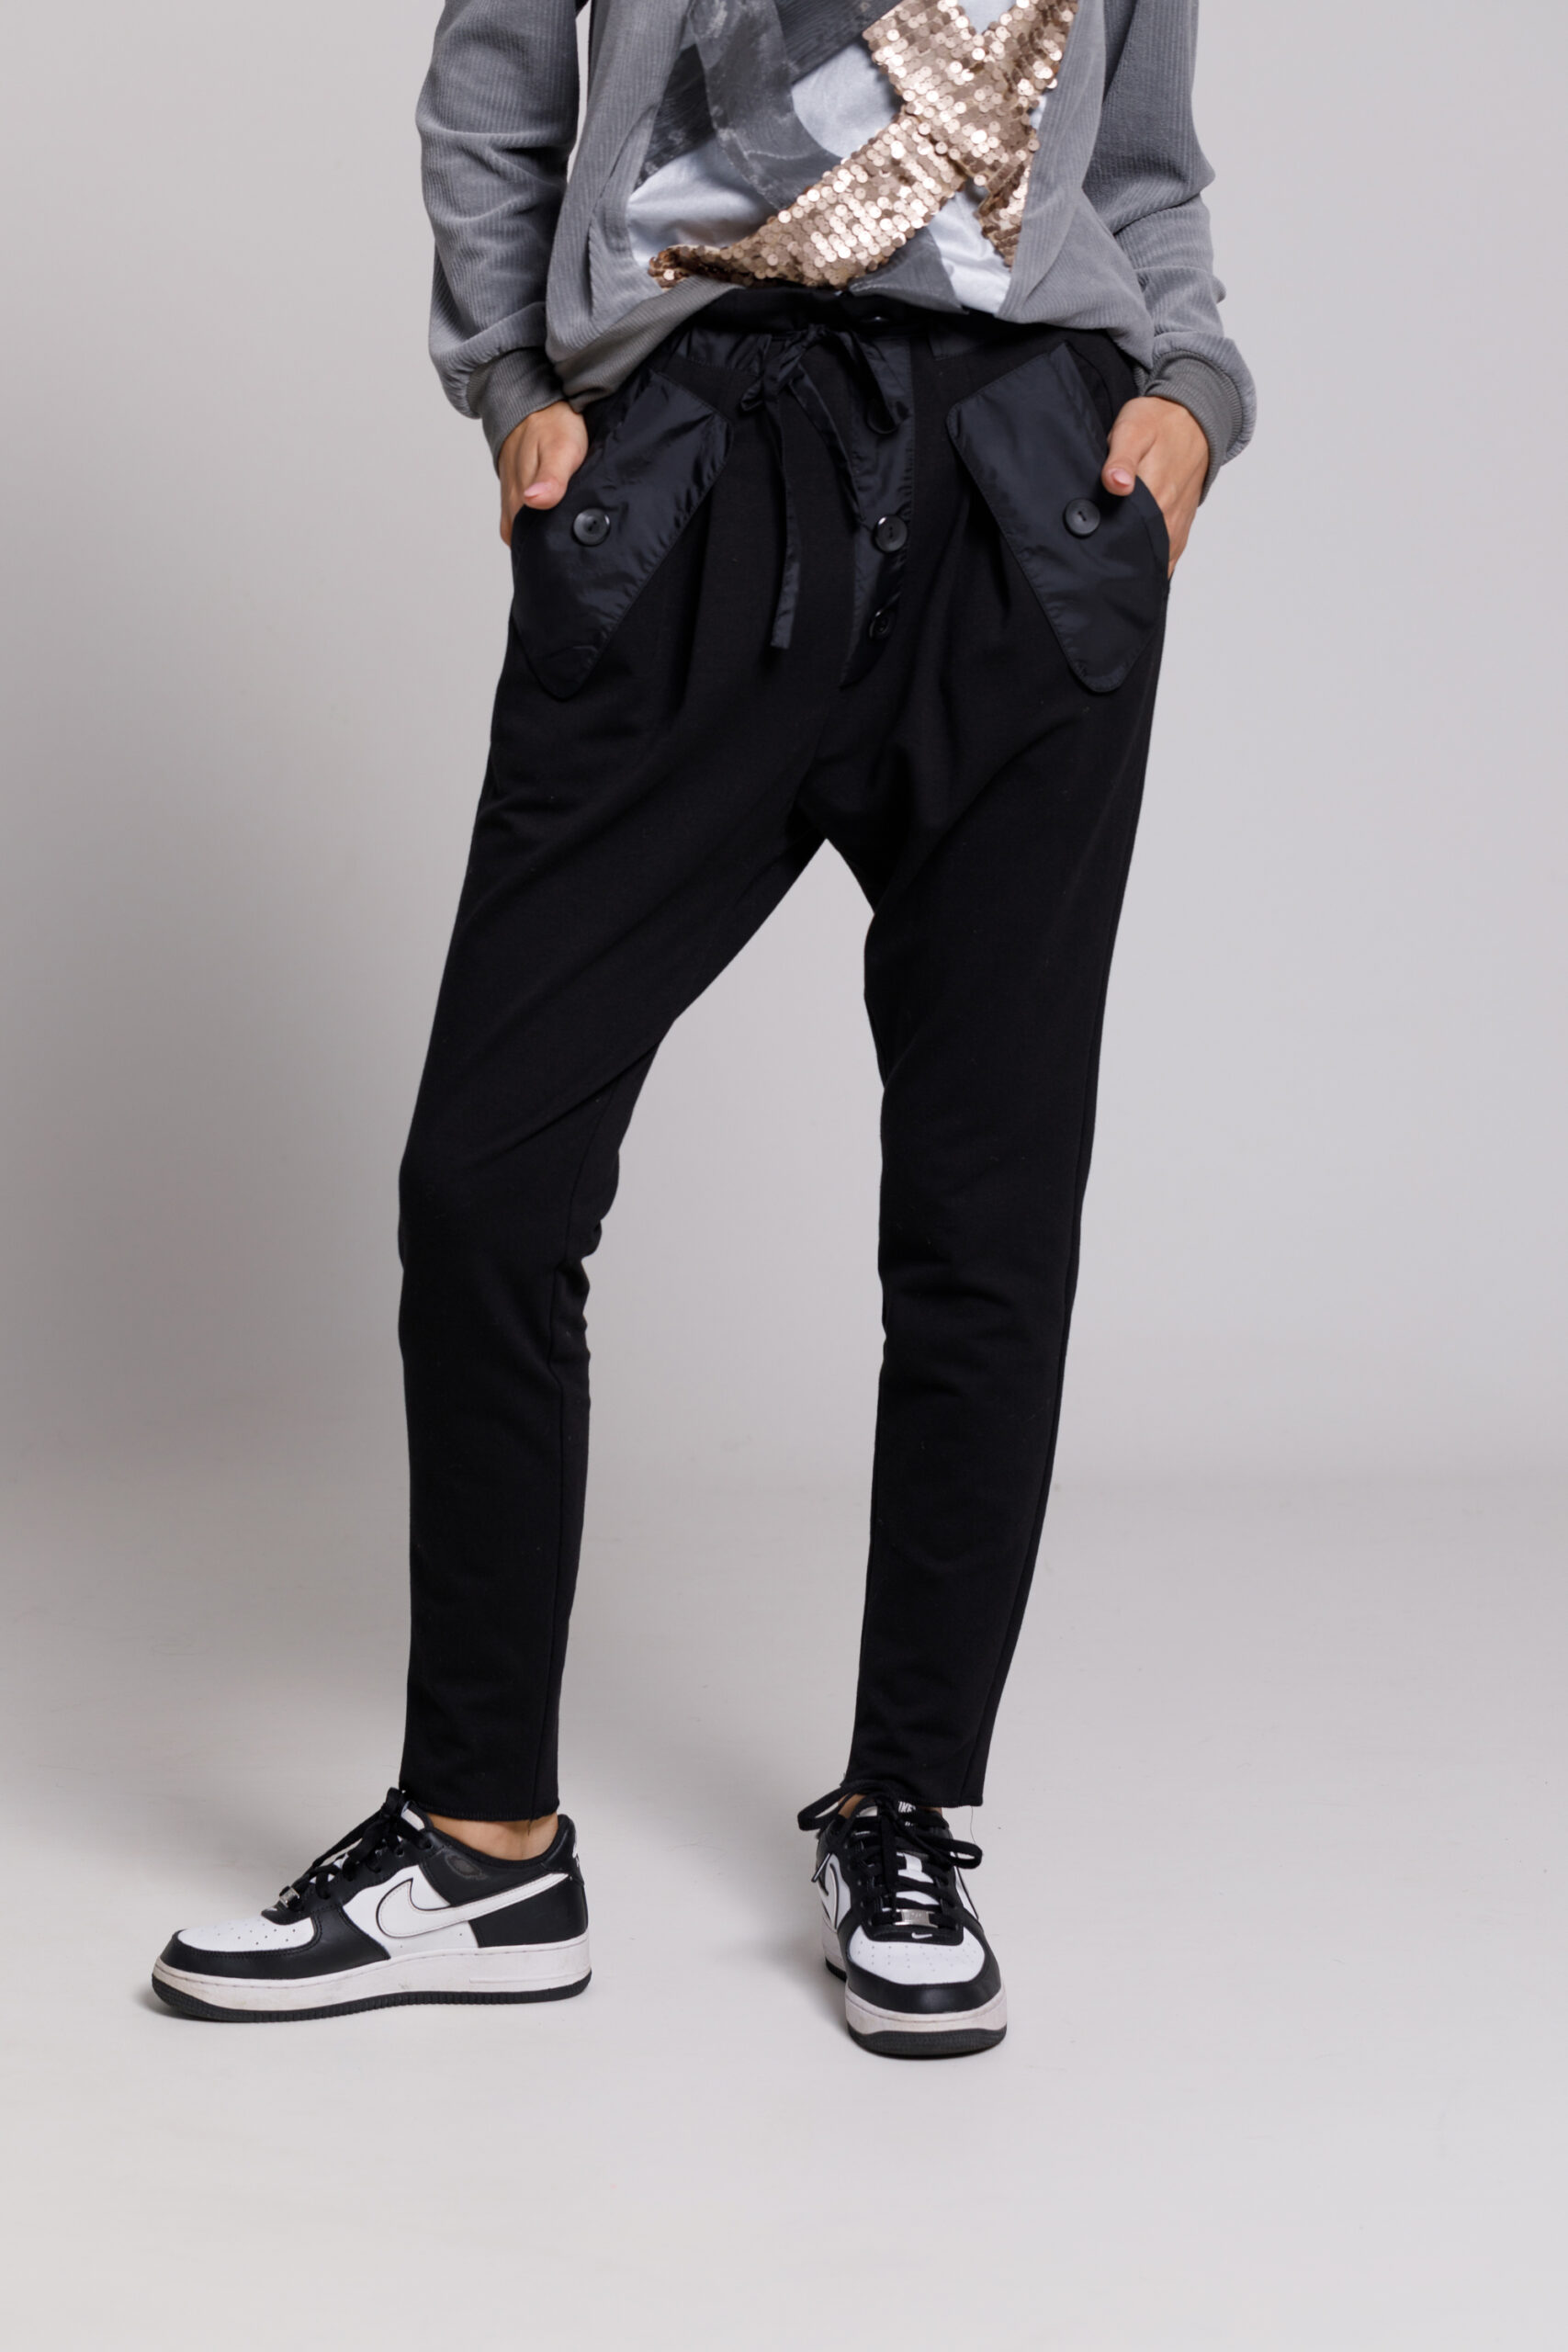 Pantalon NYO casual negru din felpa cu buzunare si clapa. Materiale naturale, design unicat, cu broderie si aplicatii handmade